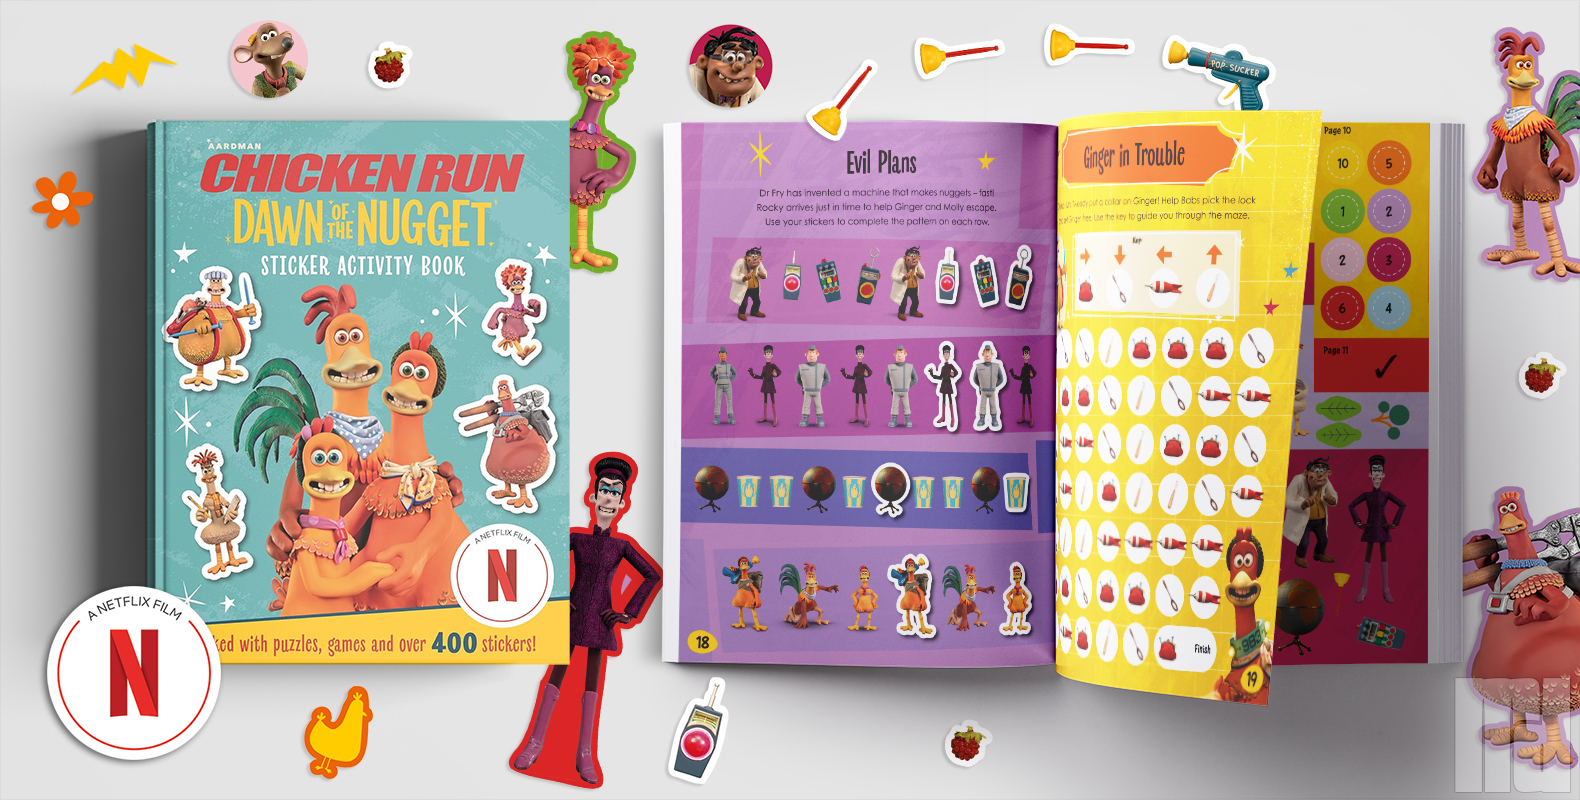 Chicken Run: Dawn of the Nugget Sticker Activity Book